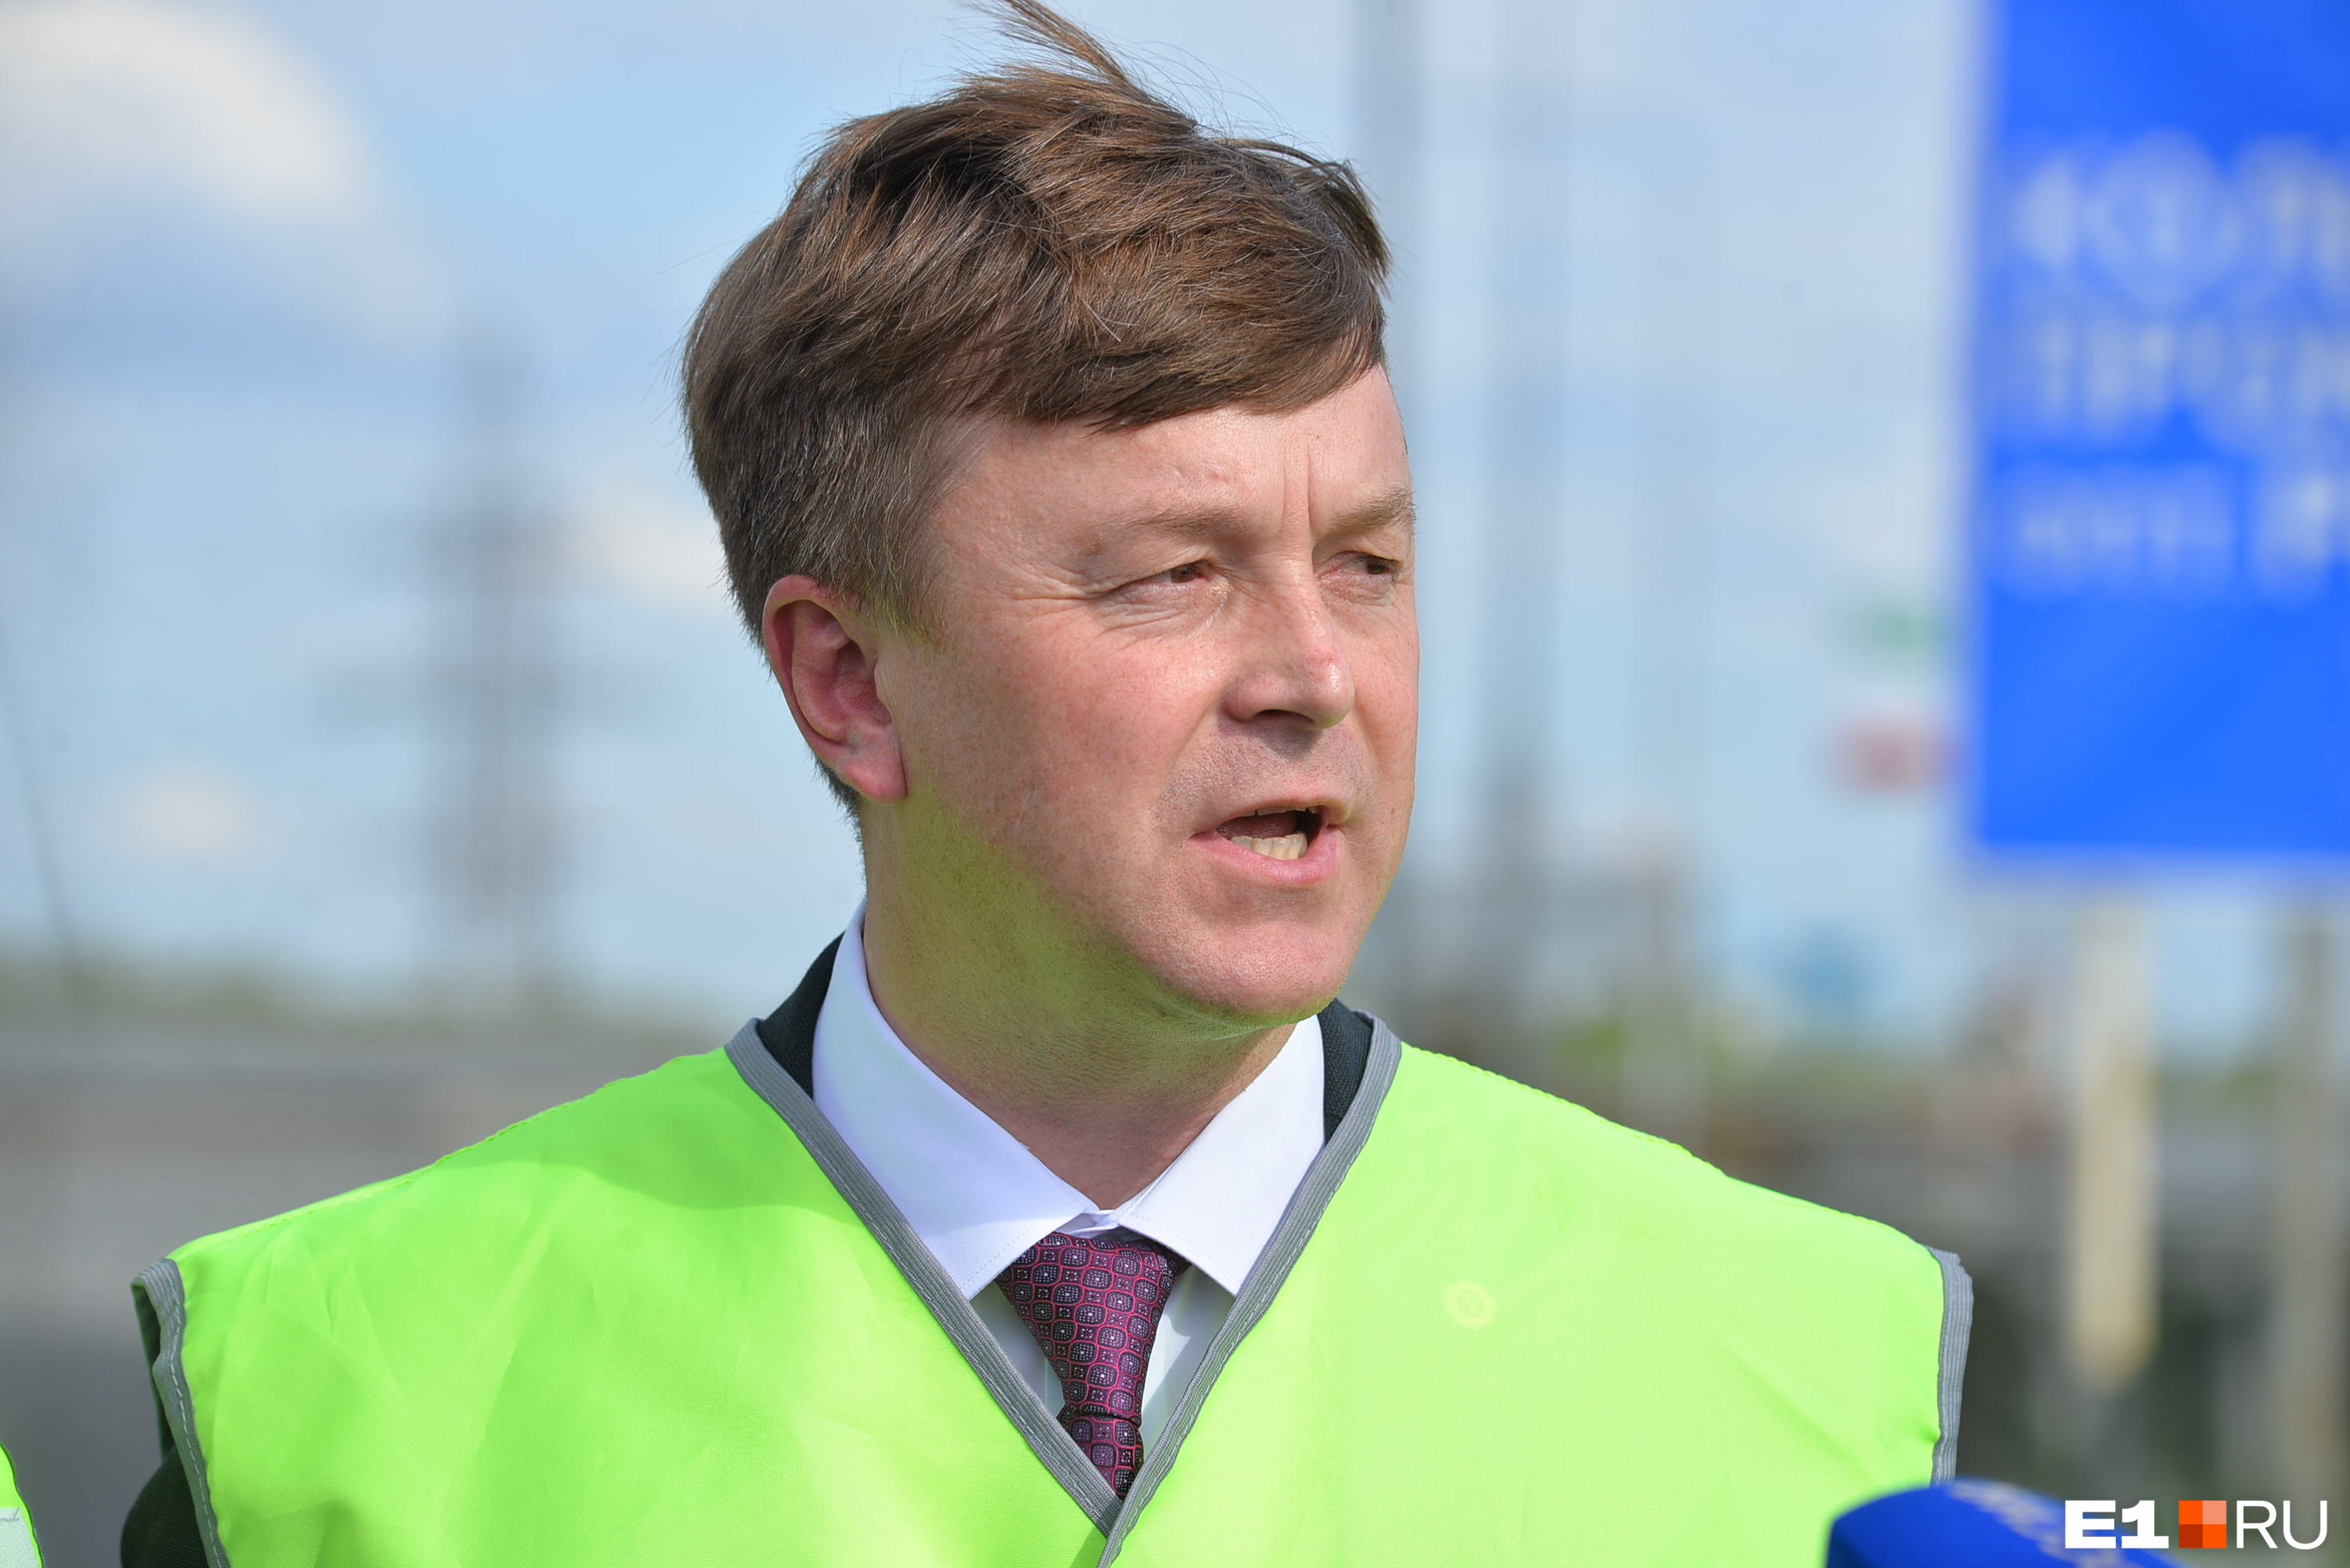 Главный по дорогам в Свердловской области ушел в отставку. Перед этим его наградили военной медалью